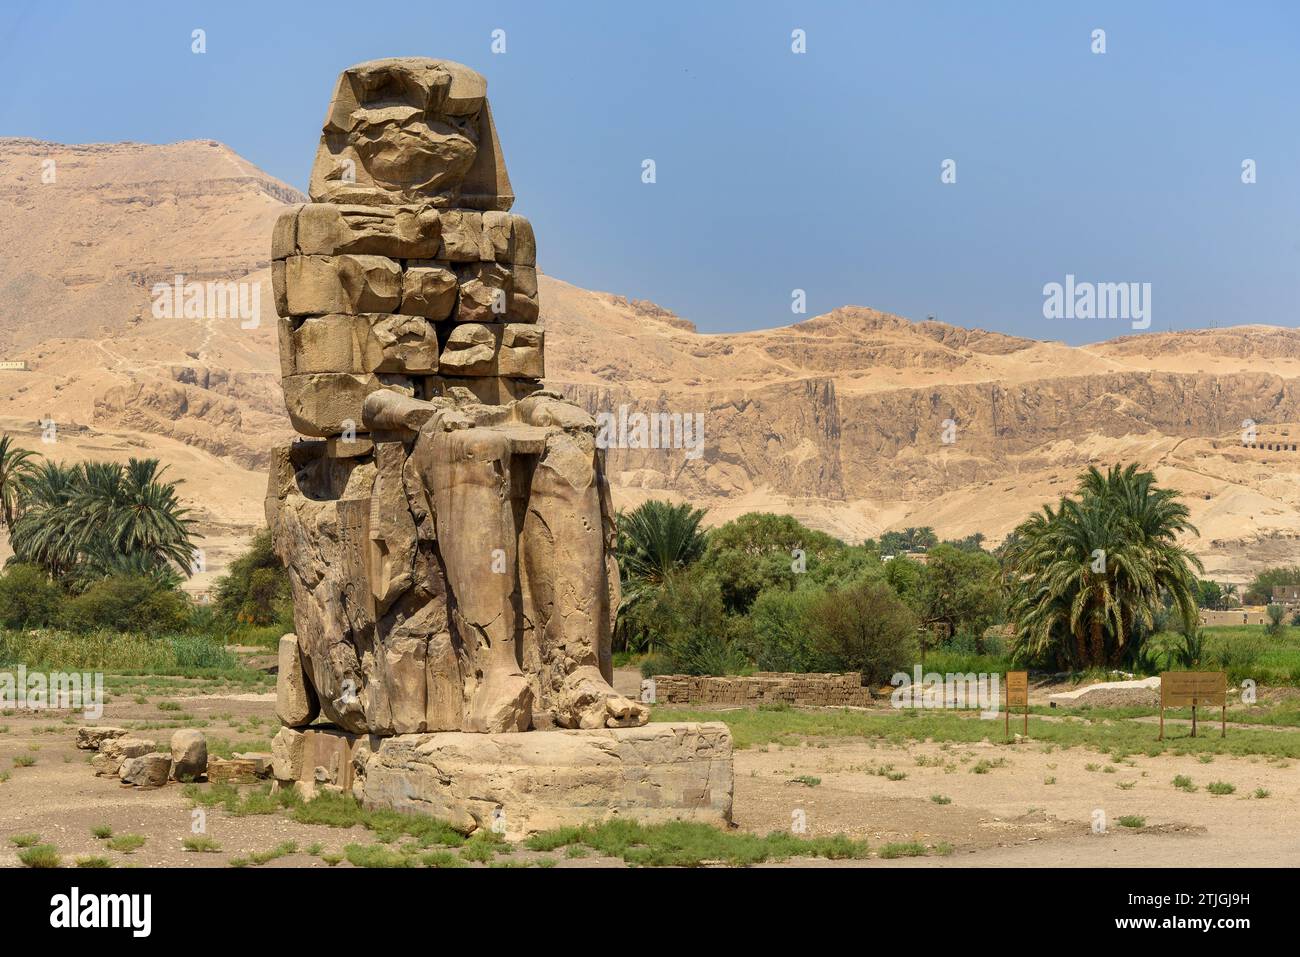 Uno dei due Colossi di Memnone. Si tratta di un'enorme statua in pietra del faraone Amenofi III, che si trova di fronte alle rovine del Tempio mortuario di Amenofi III Al Qurnah, New Valley, Egitto Foto Stock